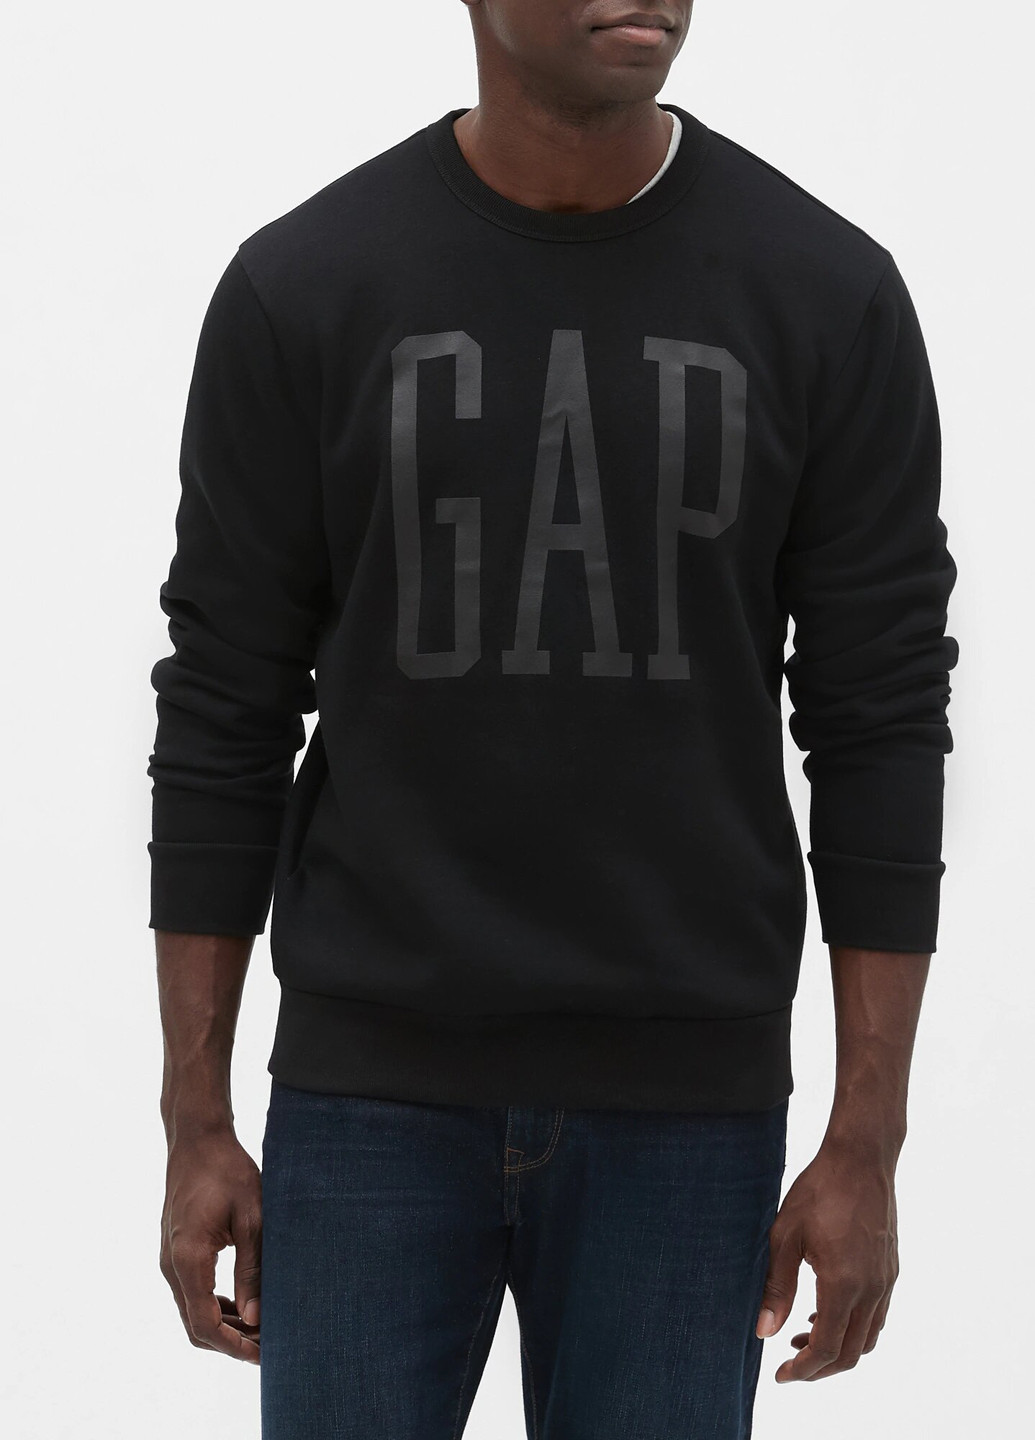 Свитшот Gap - Прямой крой логотип черный кэжуал трикотаж, хлопок - (220210511)